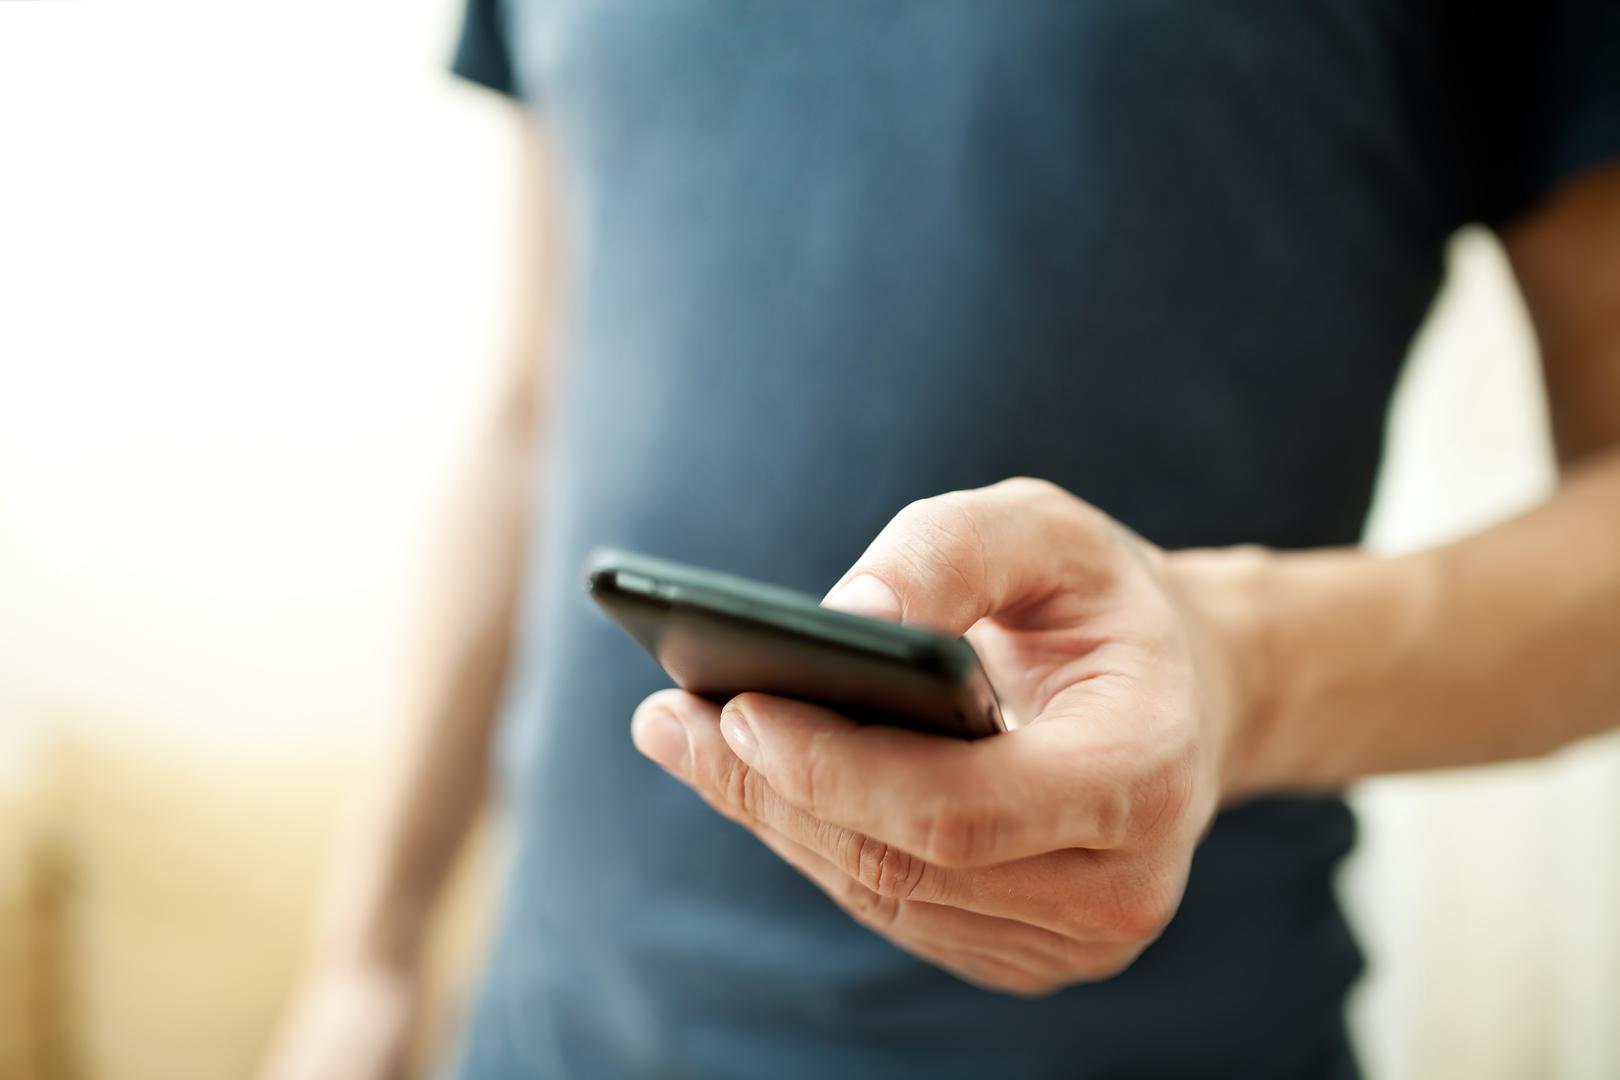 Mobitel: Vjerovali ili ne neki seksolozi predlažu da se malo zaigrate s mobitelom i mogućnostima koje on pruža. Pritom ne misle na slanje seksi poruka, nego na uključivanje vibre koja može biti jača, brža ili kraća. Izbor je na vama.